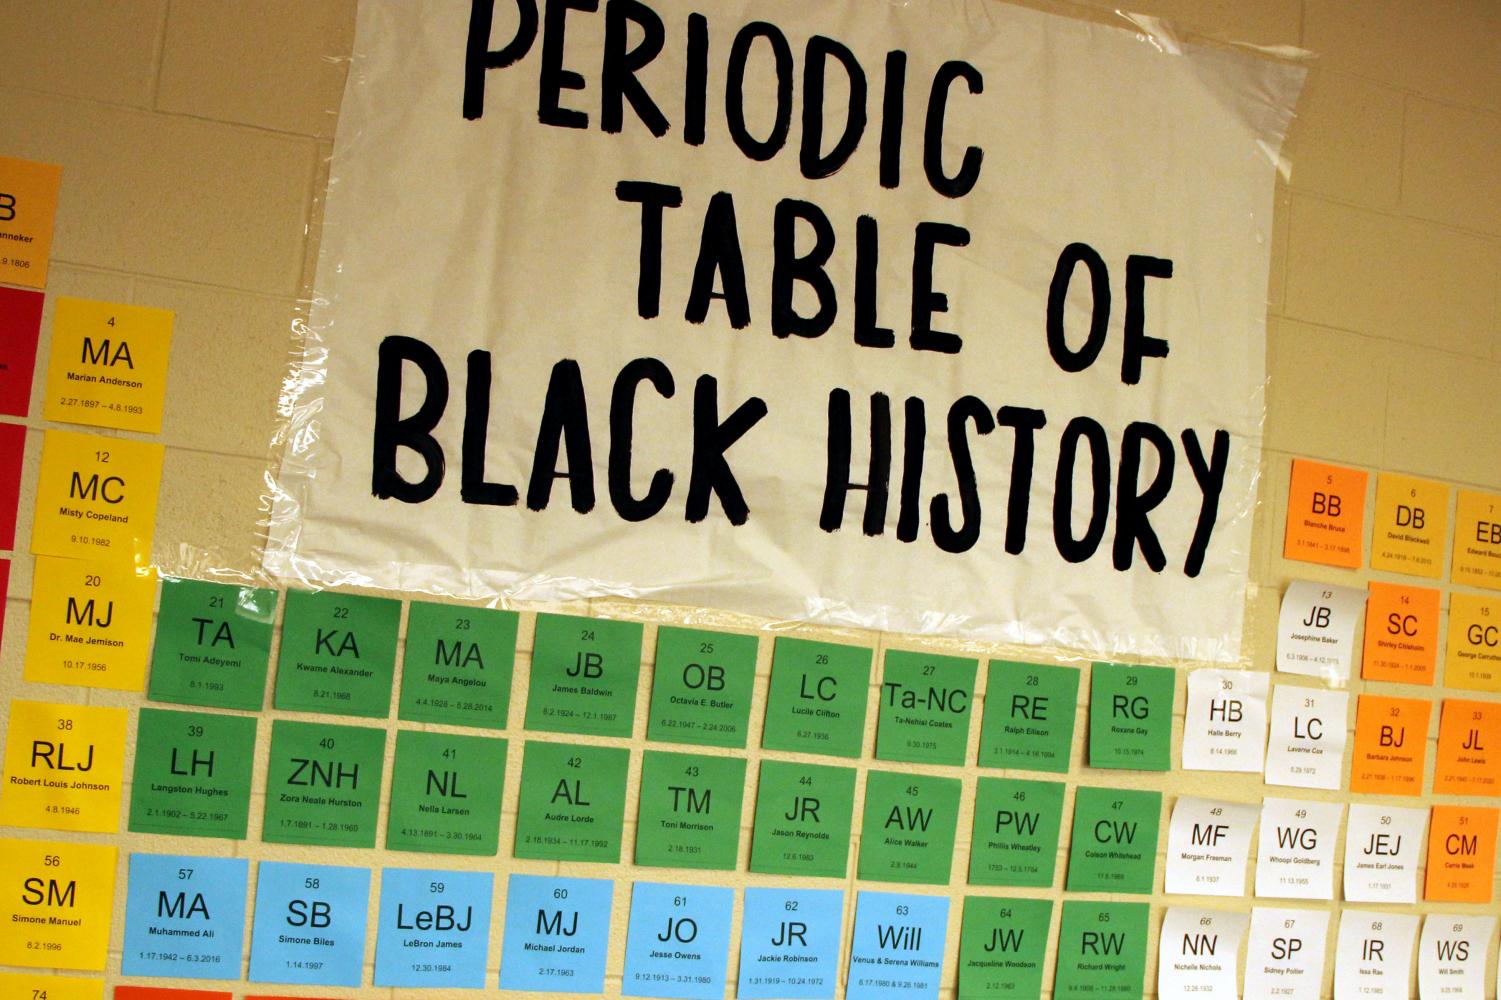 لوحة إعلانات تقول الجدول الدوري للتاريخ الأسود.  تحتوي على مربعات صغيرة مثل الجدول الدوري ولكنها تحتوي على الأحرف الأولى وأسماء الأشخاص السود المشهورين.